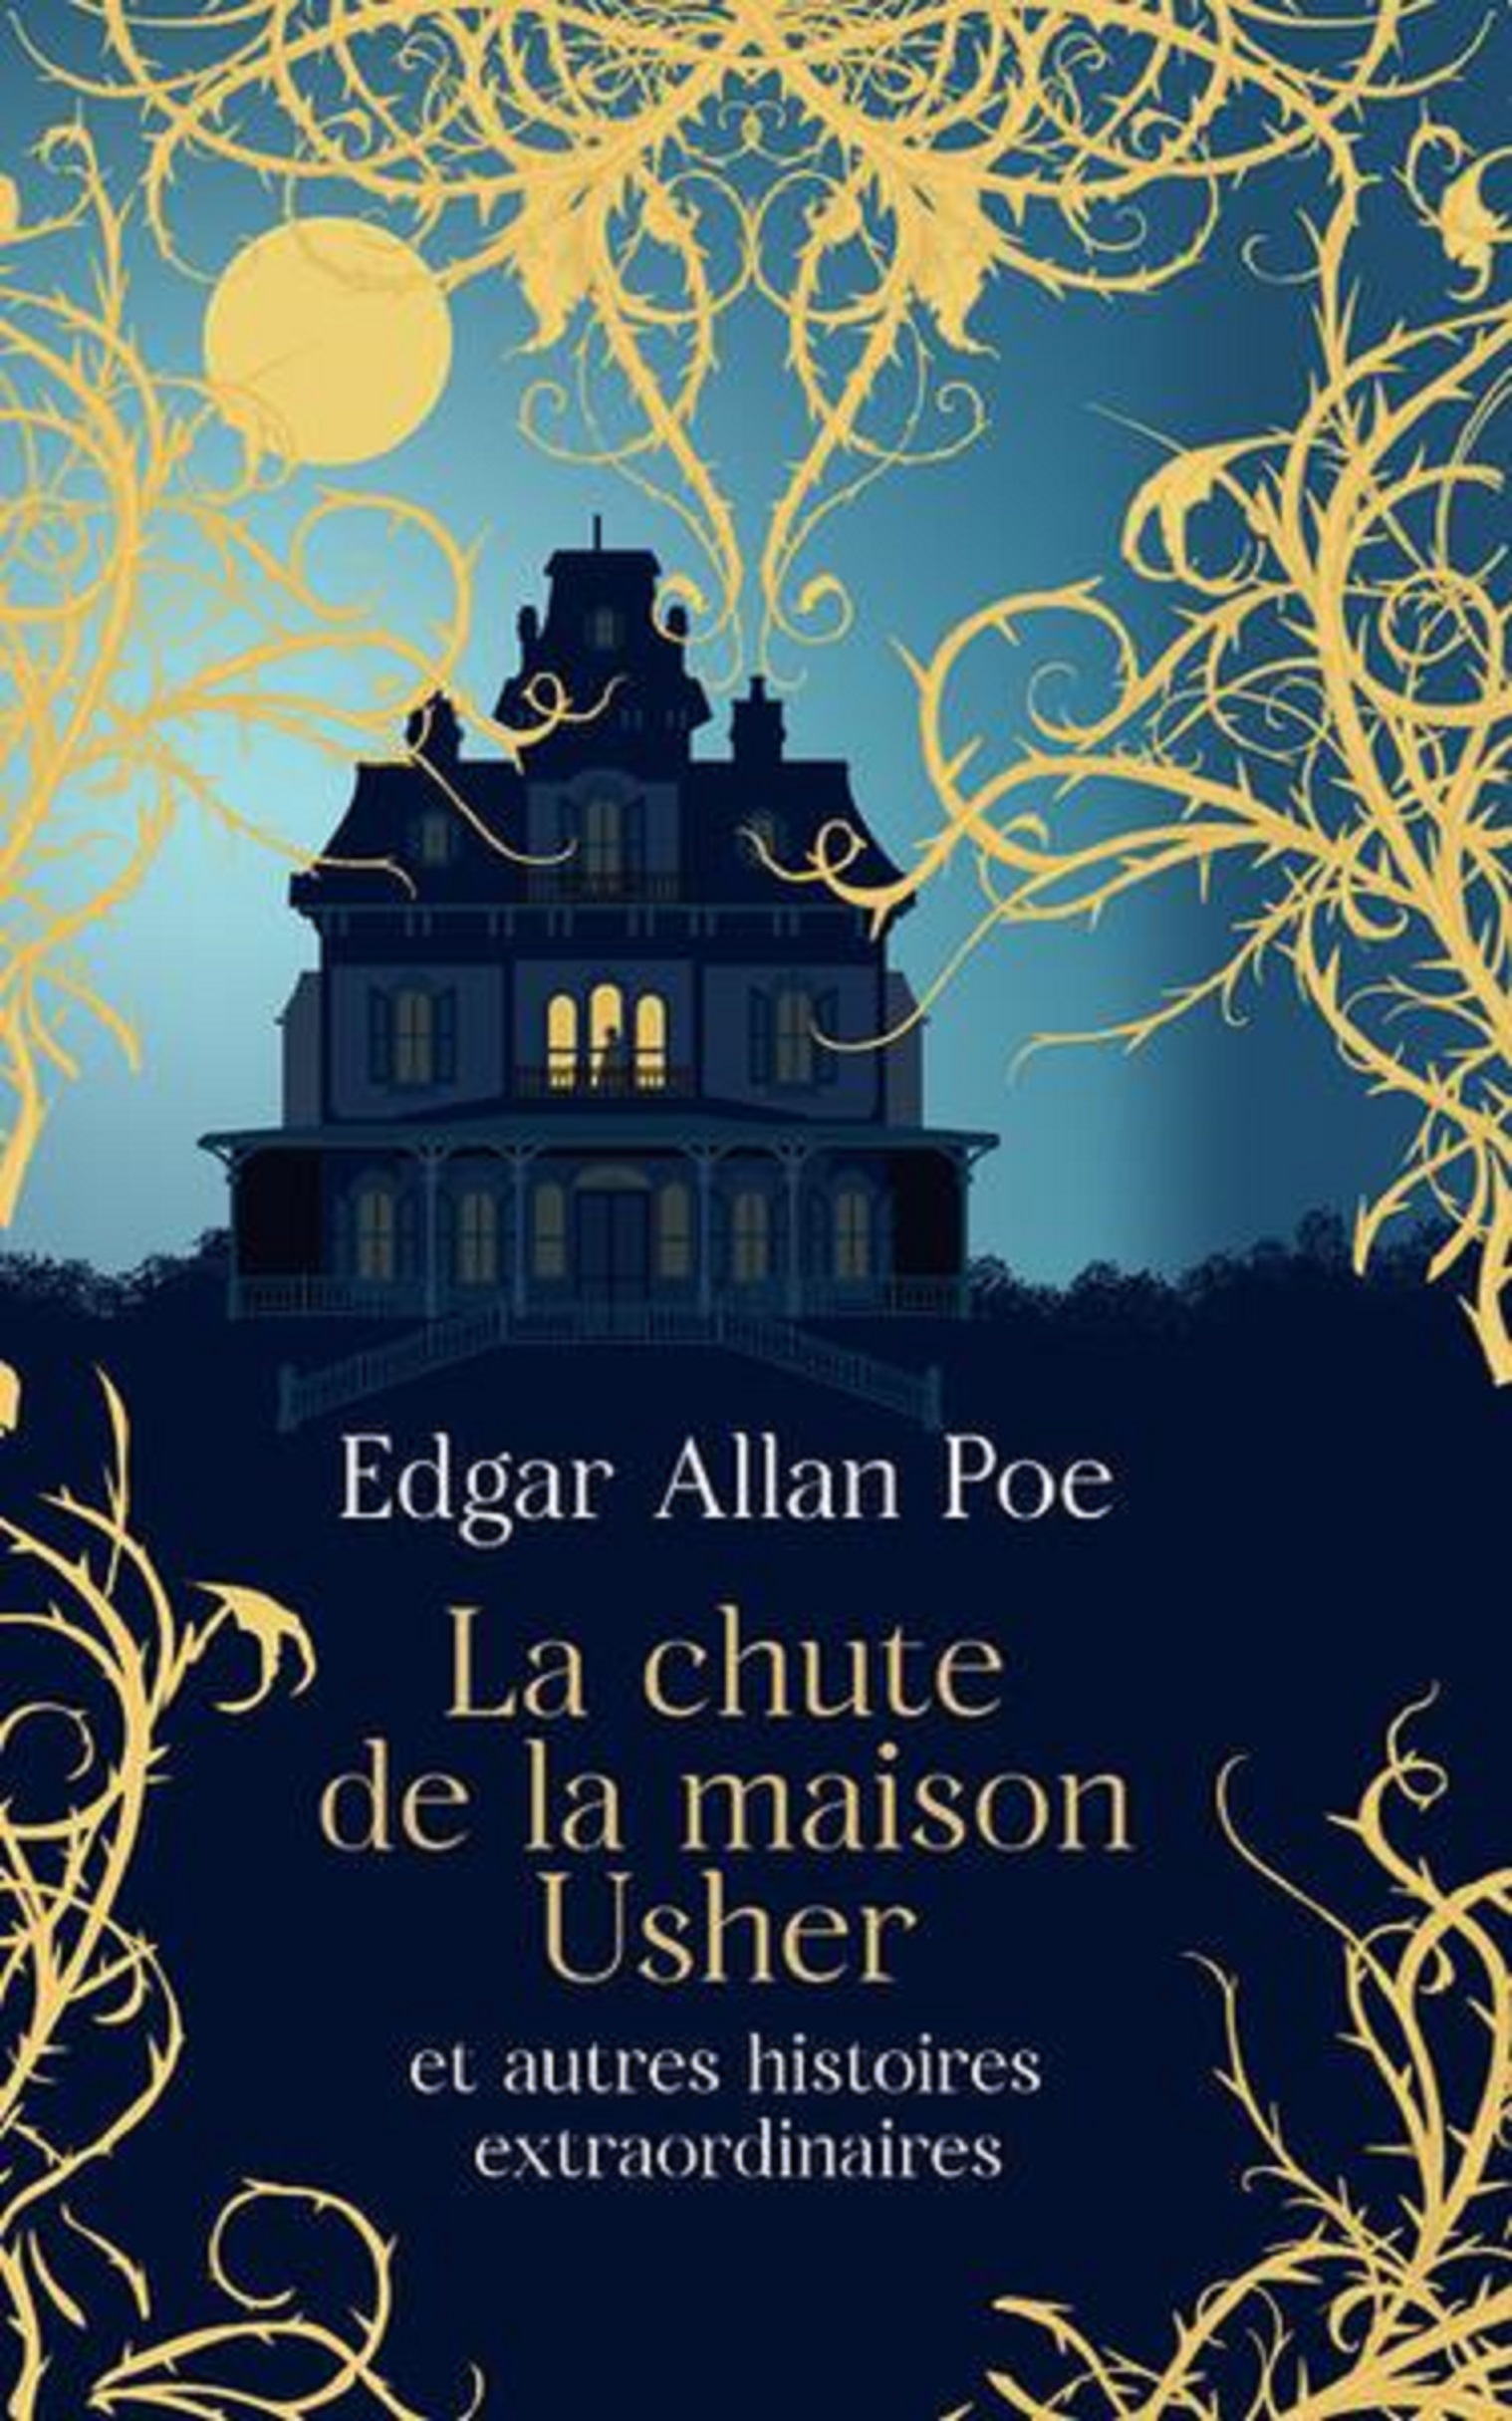 La chute de la maison Usher et autres histoires extraordinaires | Edgar Allan Poe